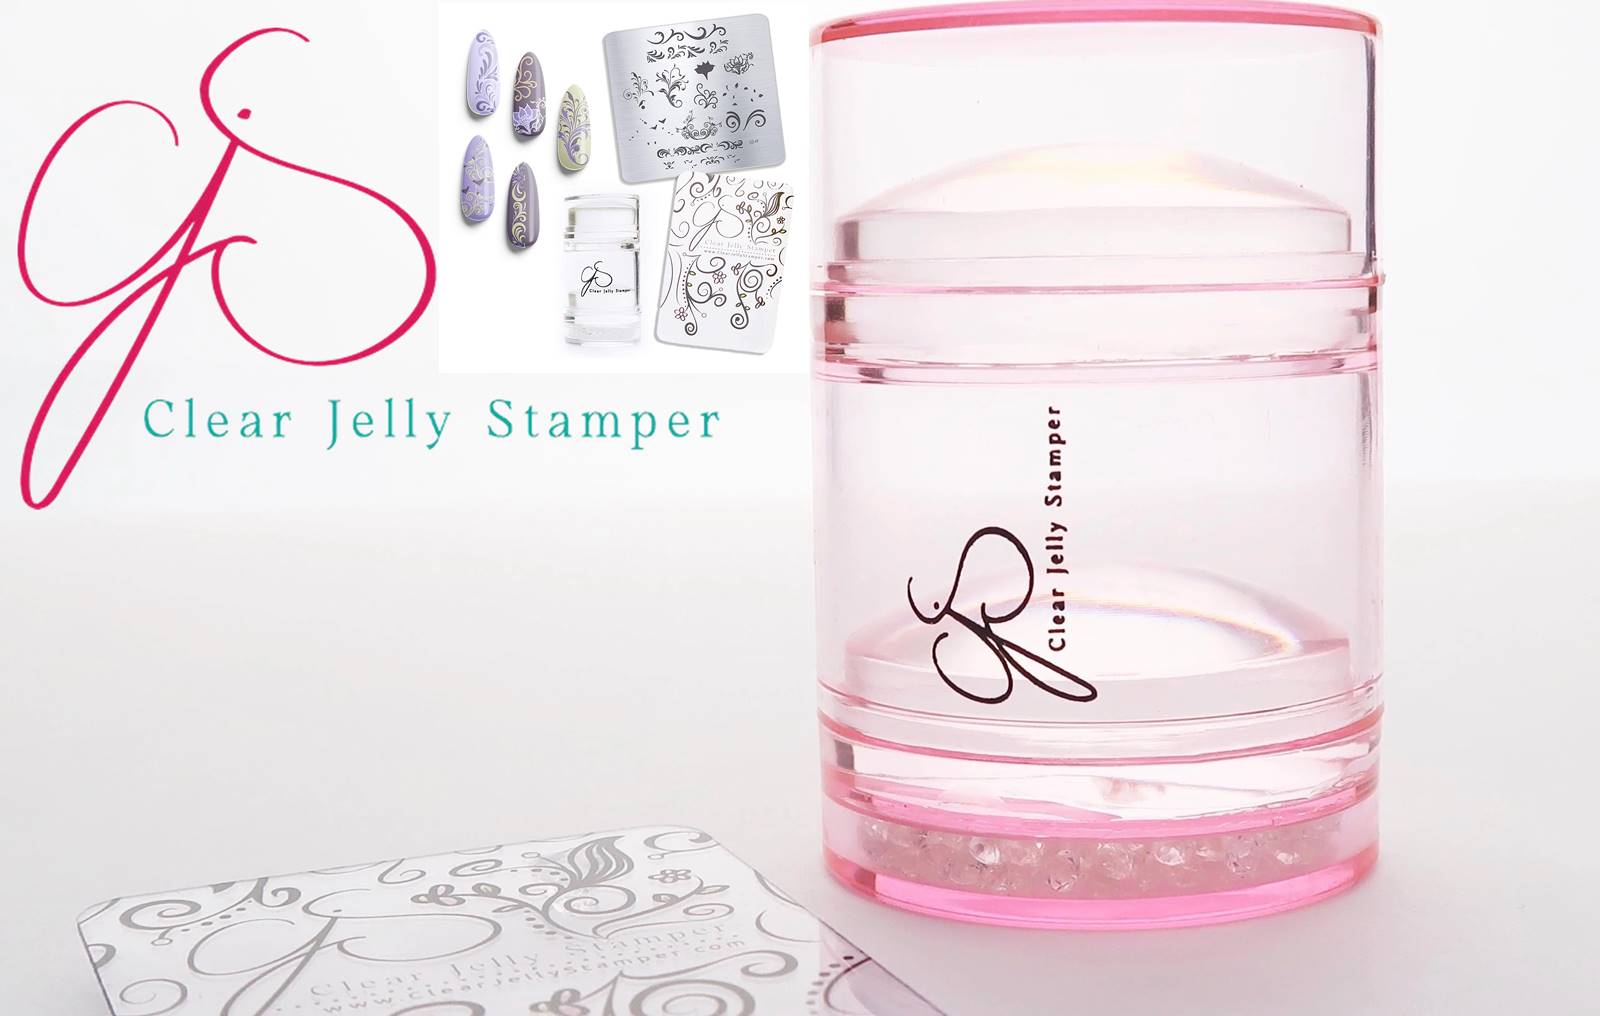 2. Jelly Stamper Nail Design Set - wide 4